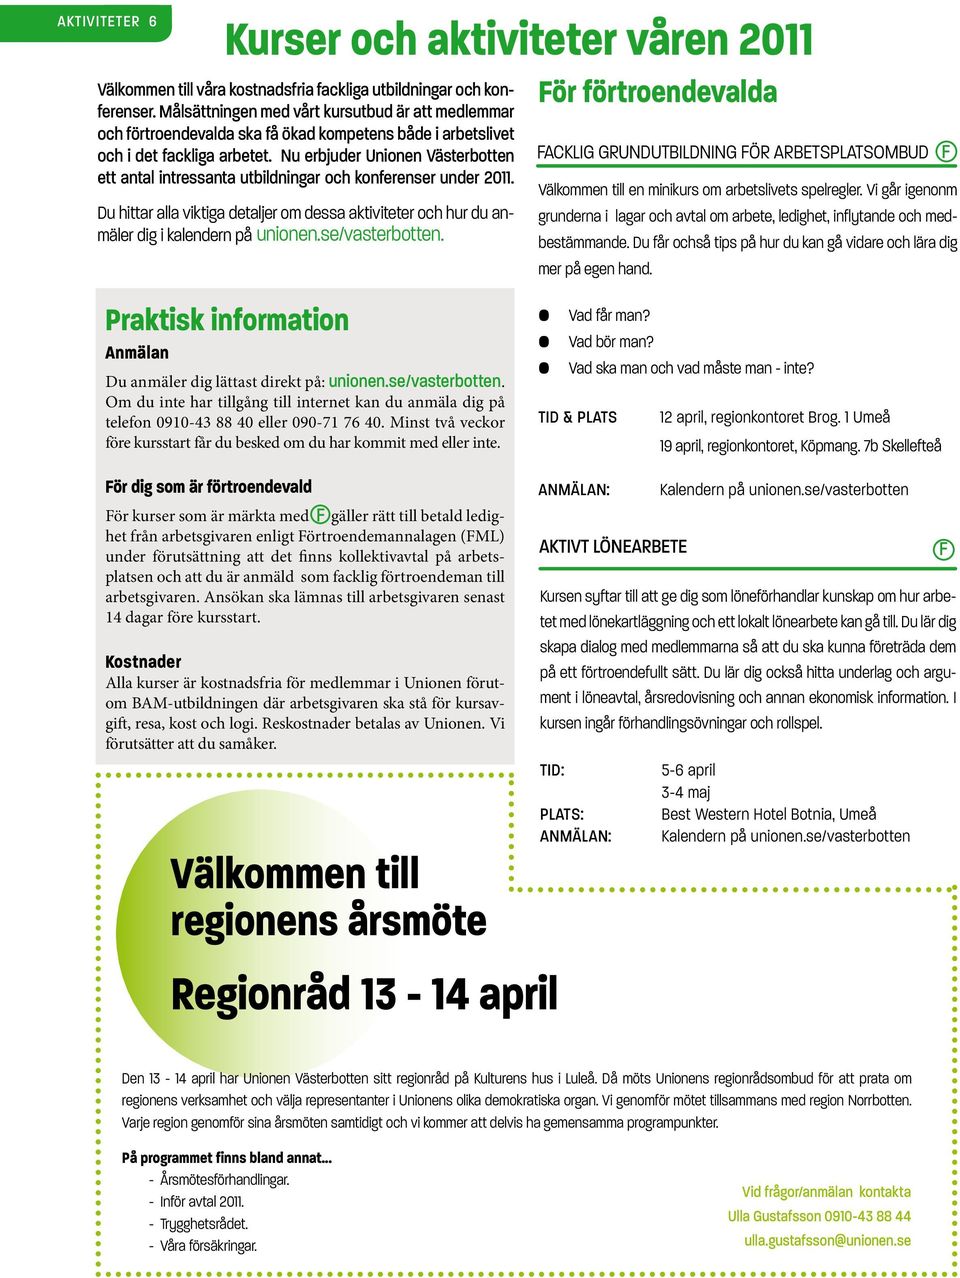 Nu erbjuder Unionen Västerbotten ett antal intressanta utbildningar och konferenser under 2011. Du hittar alla viktiga detaljer om dessa aktiviteter och hur du anmäler dig i kalendern på unionen.